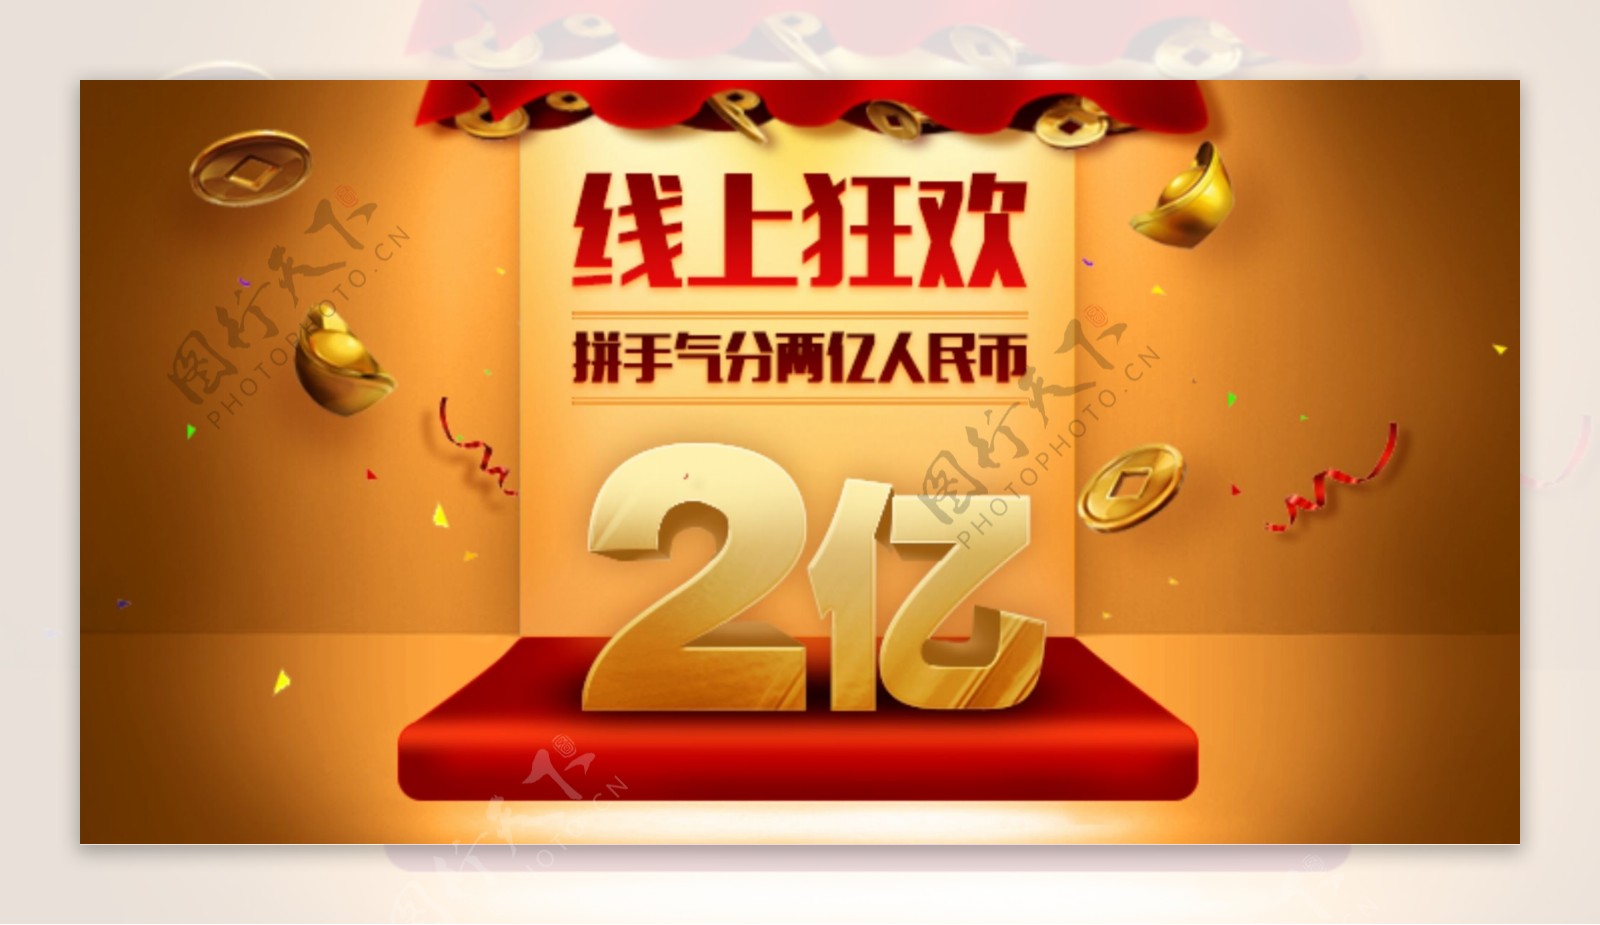 红包现金2亿人民币促销活动banner